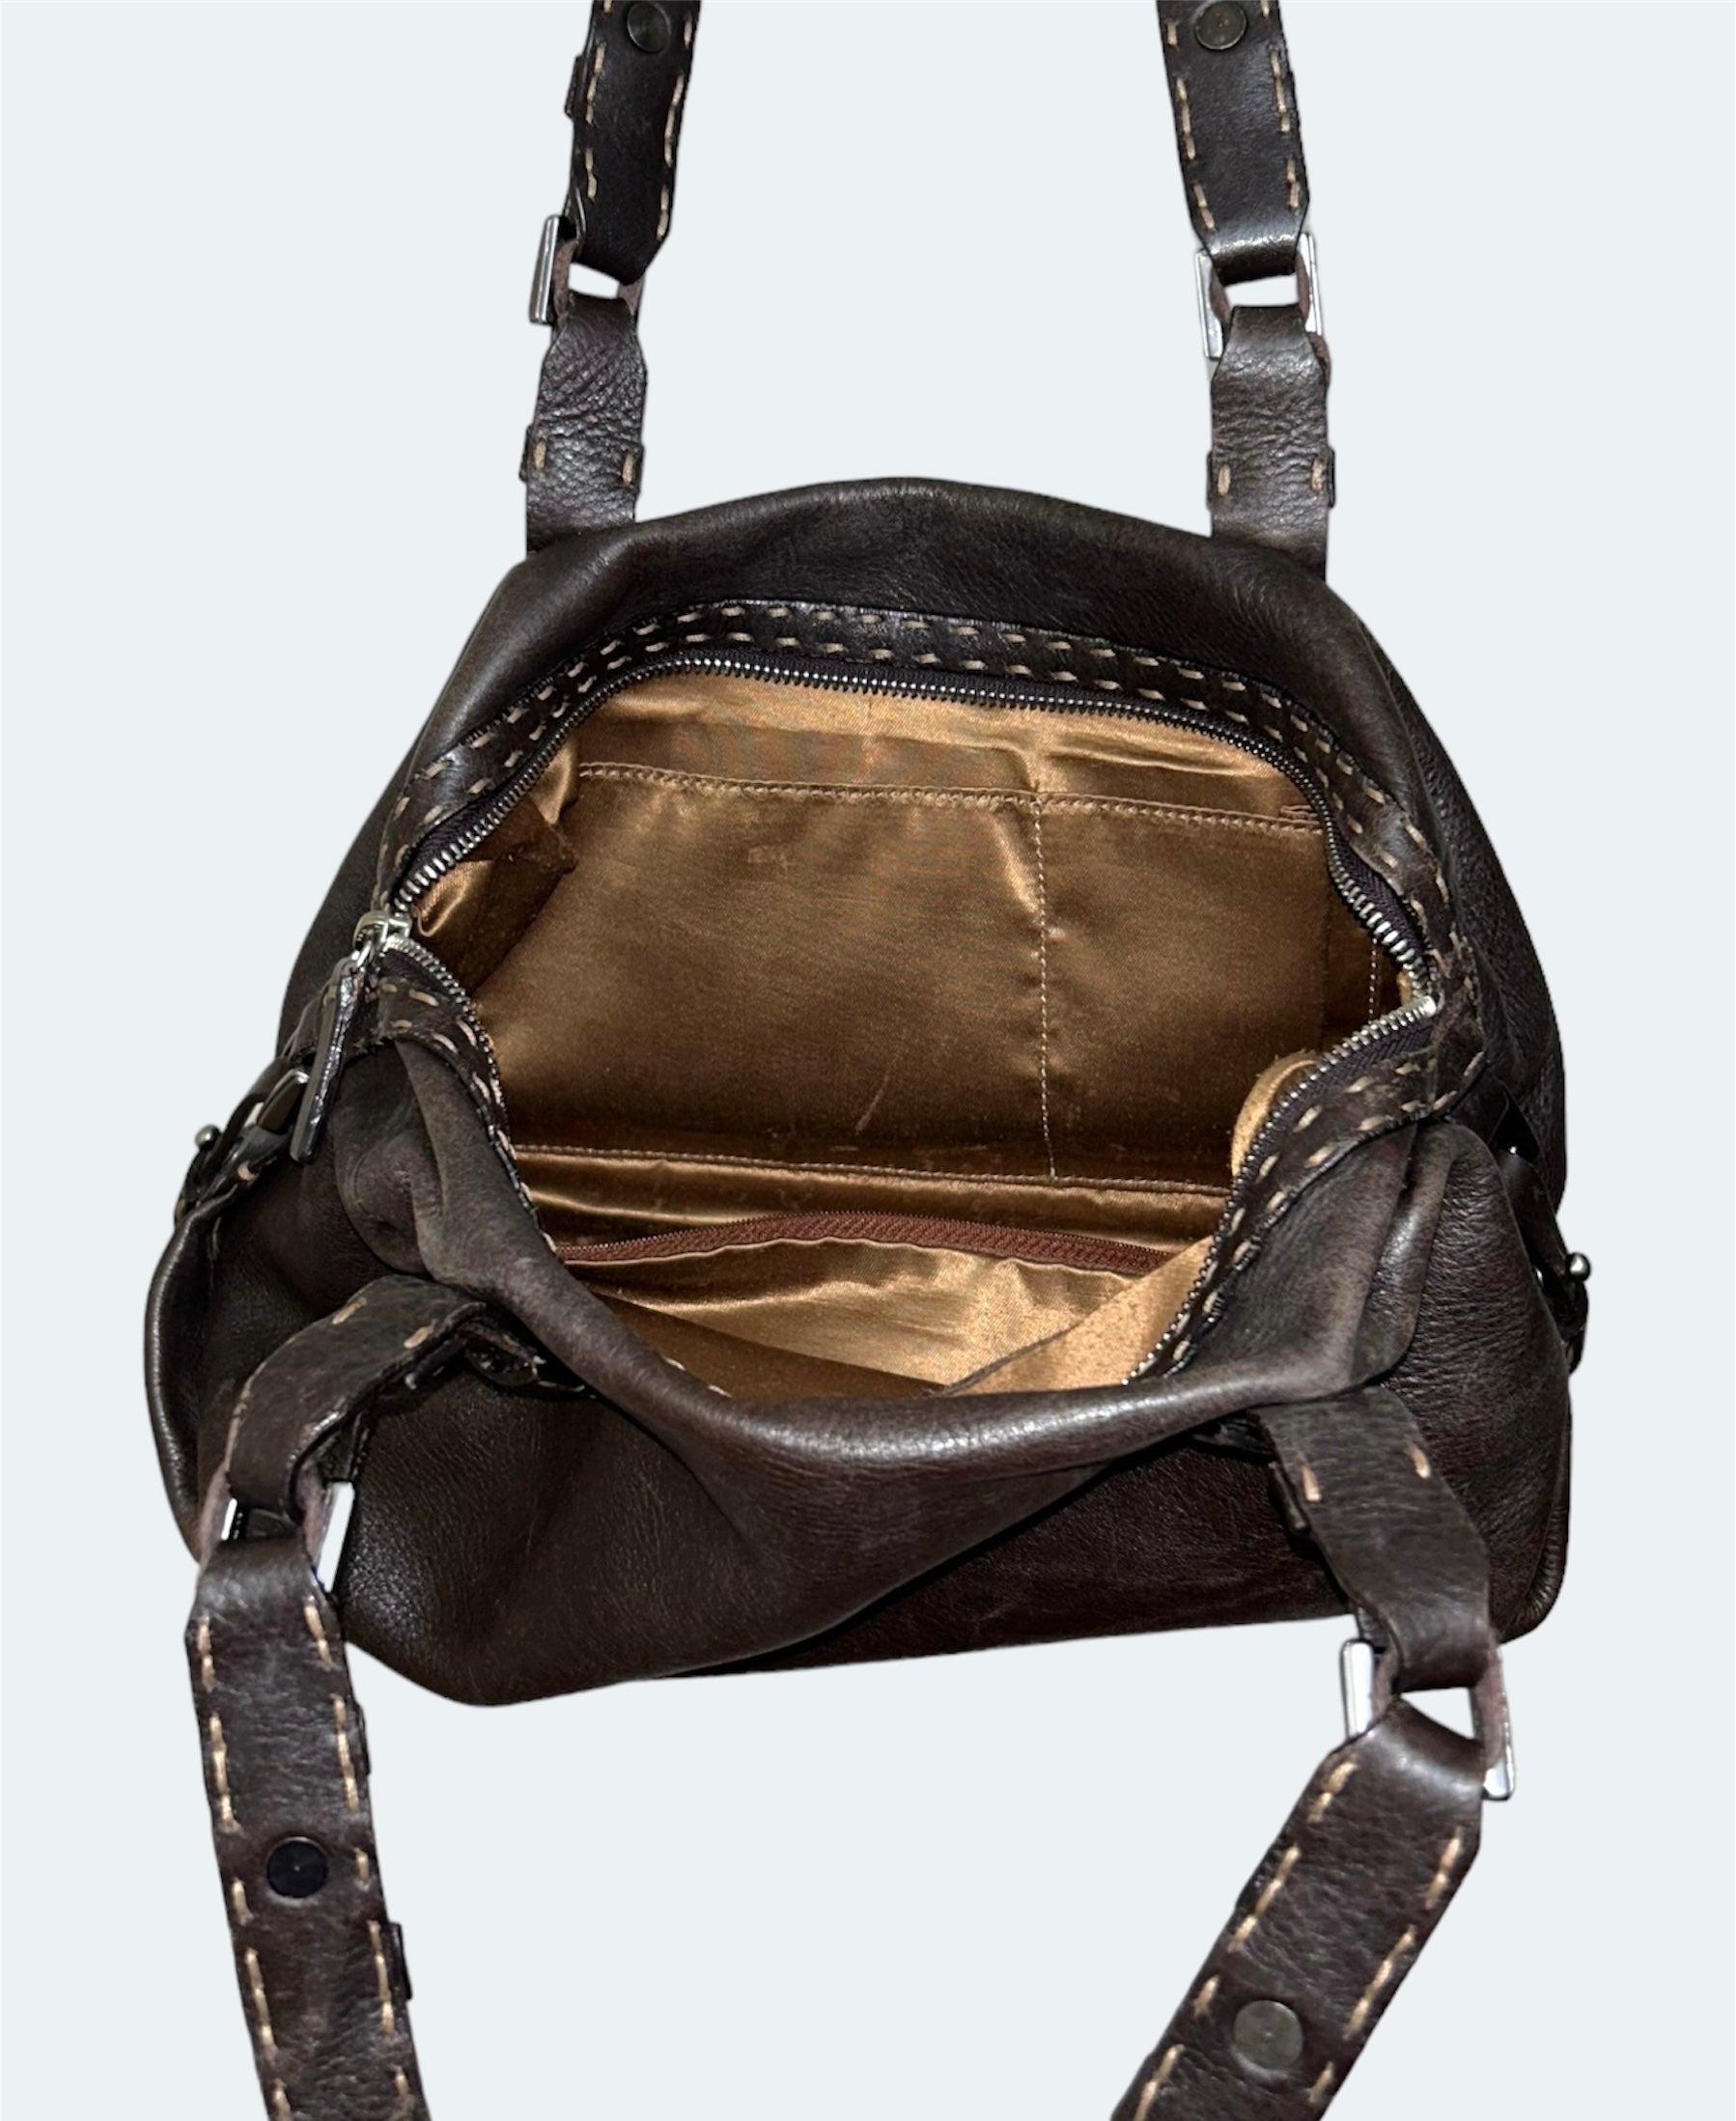 inside of brown leather shoulder bag 